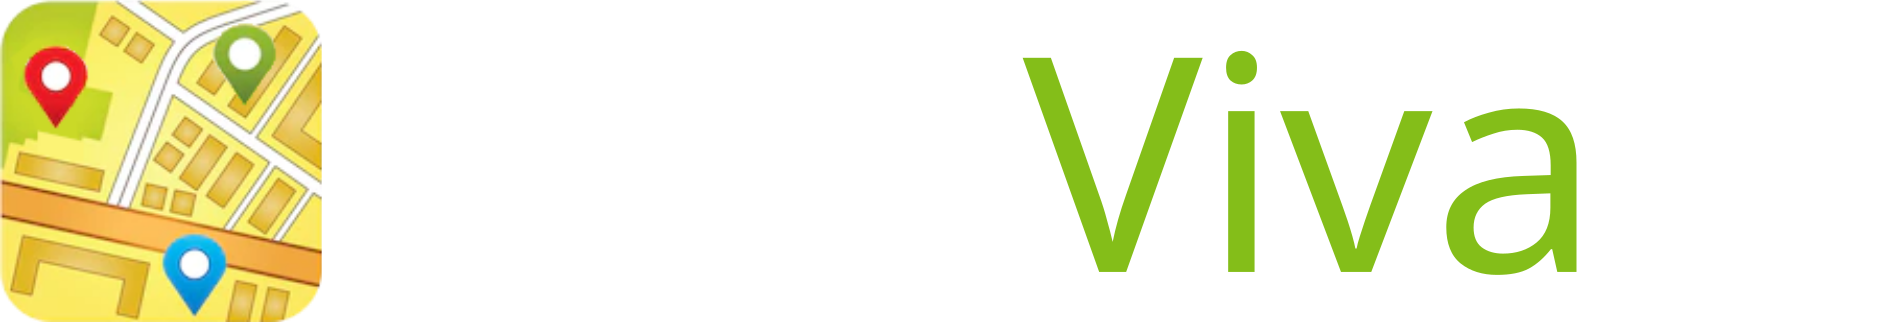 CittaViva.net Logo